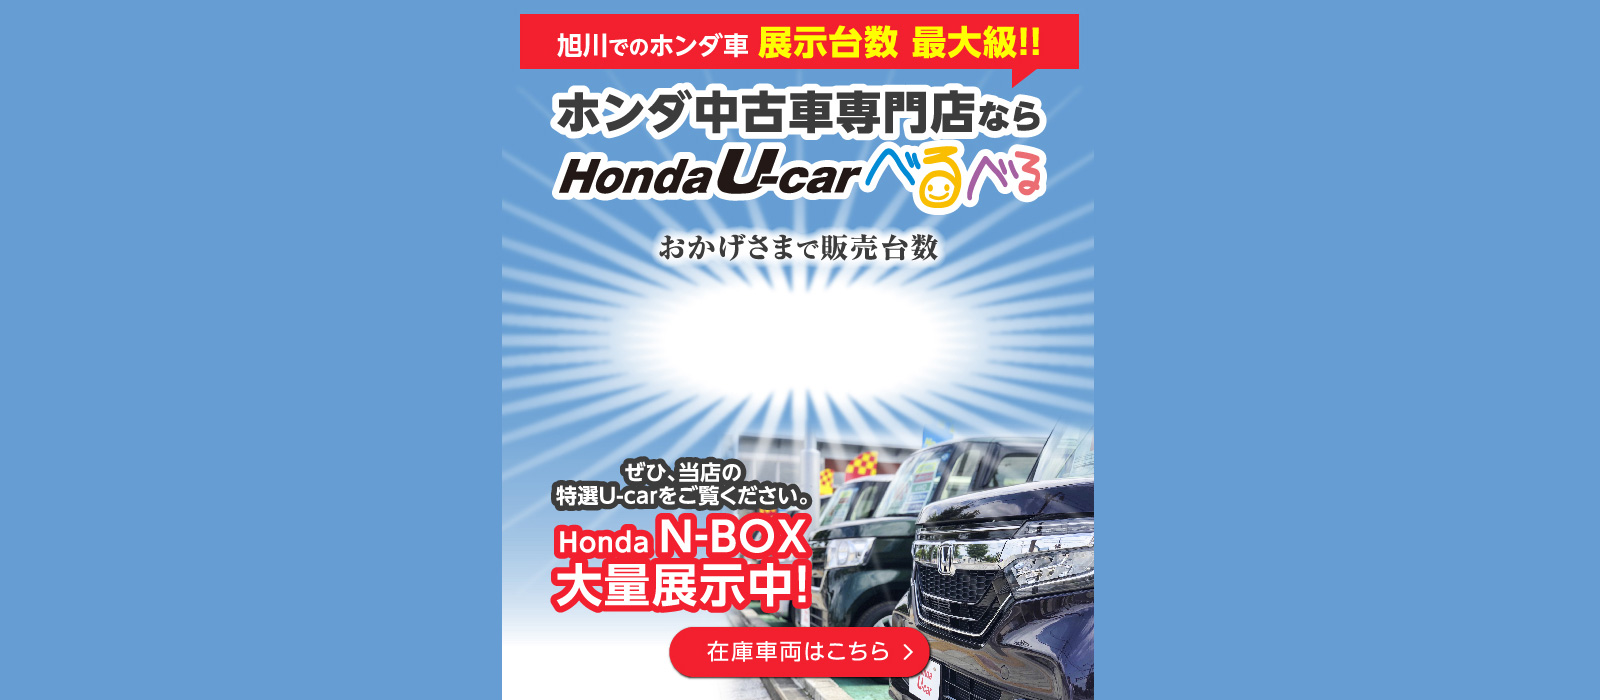 旭川市内最大級のホンダ車専門店 Honda U Carべるべる 公式 品質 性能 価格ともに自信を持った1台をお届け